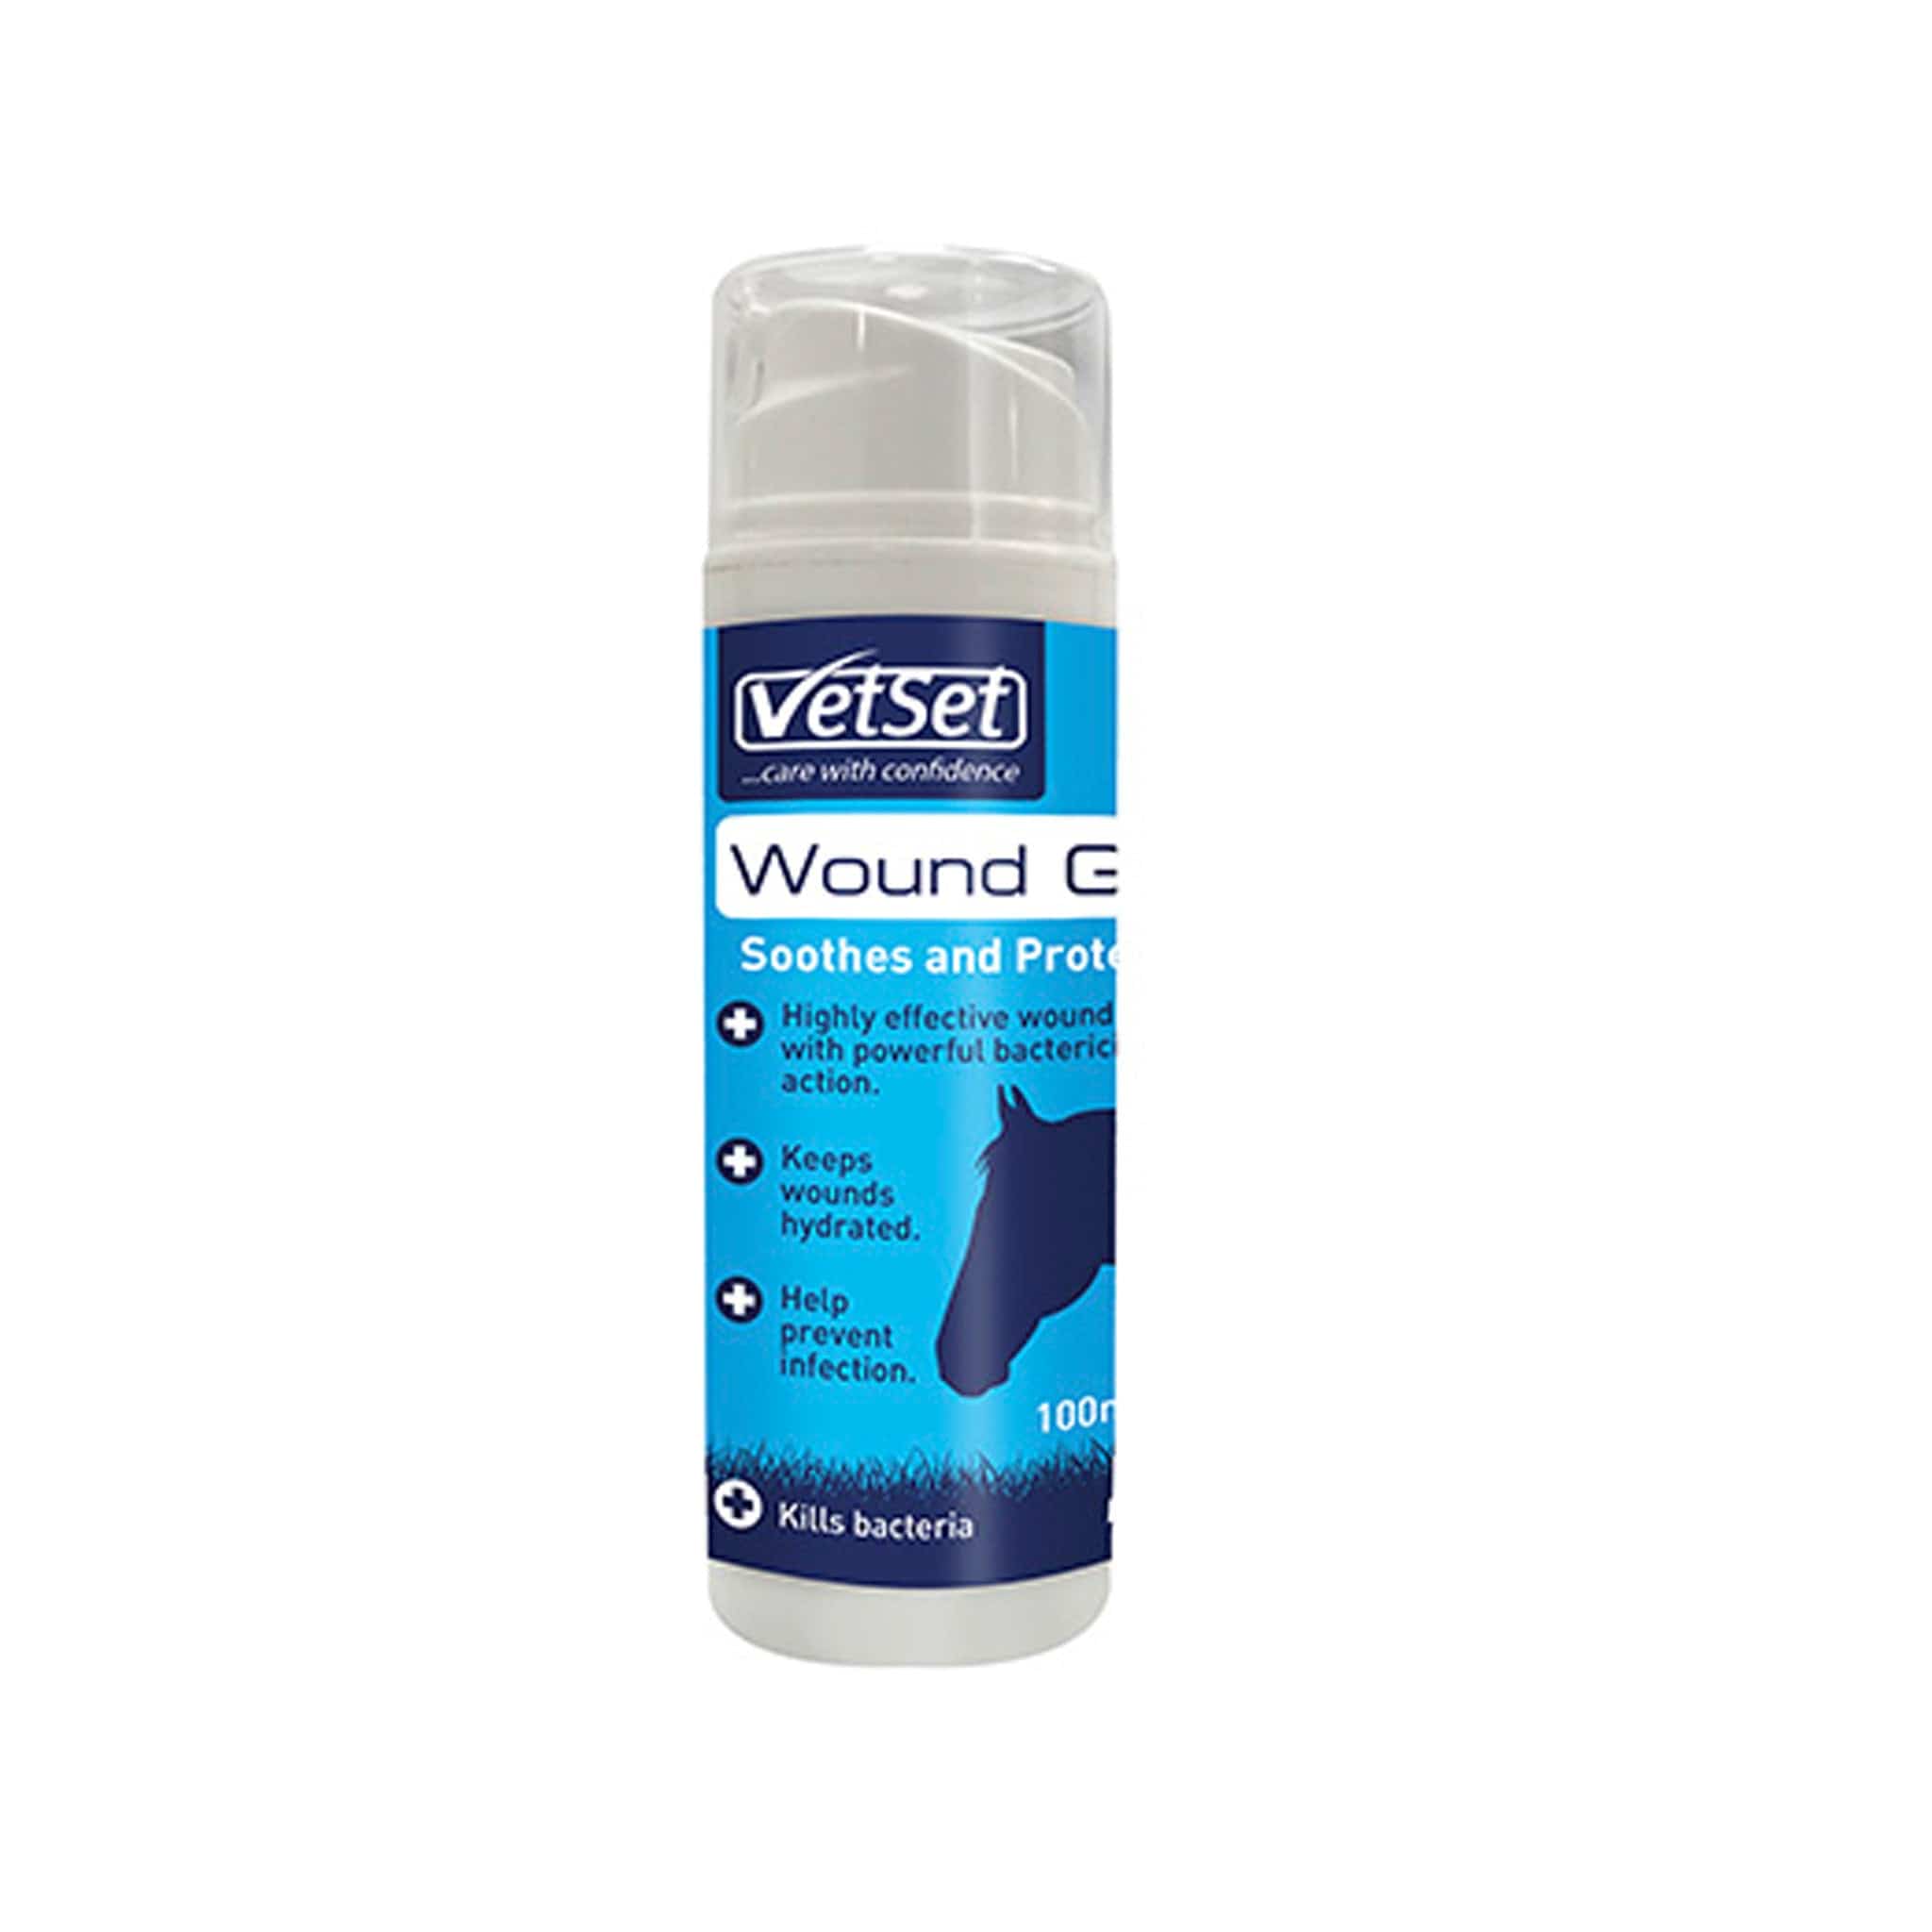 VetSet Woundgel VTS0100